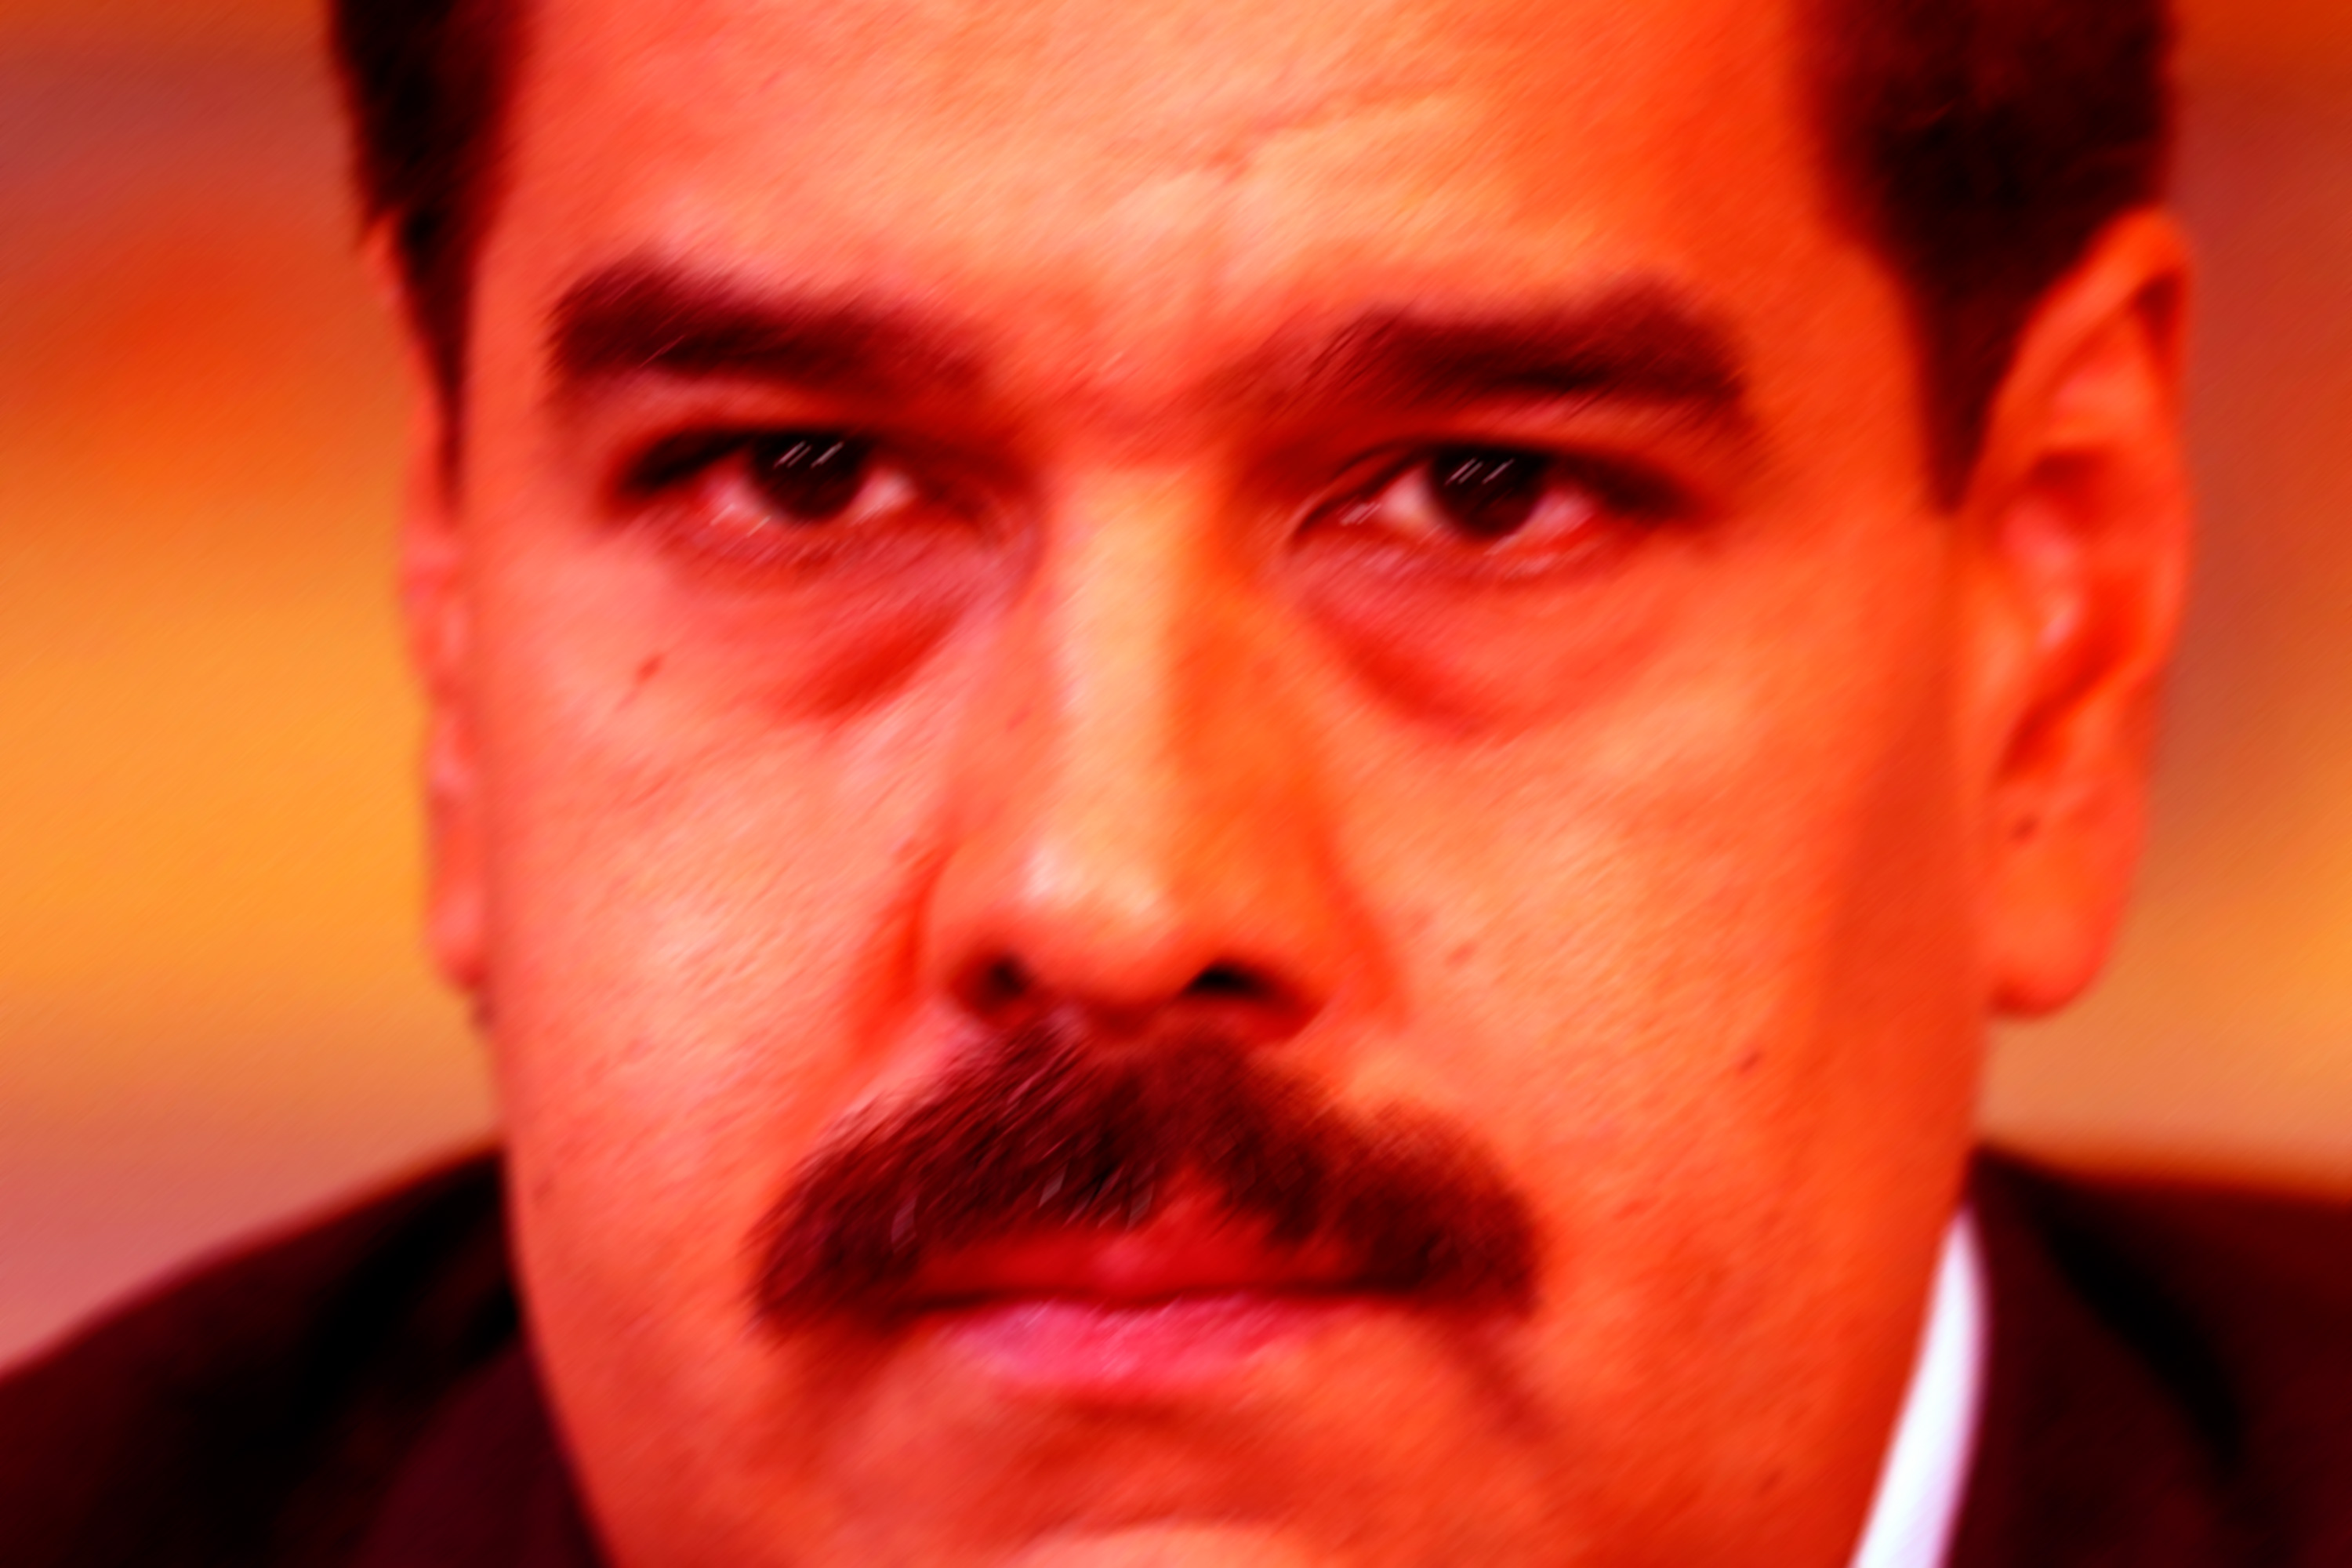 88.9 % de venezolanos quiere que Maduro y el chavismo se vayan YA (Encuesta Meganálisis)